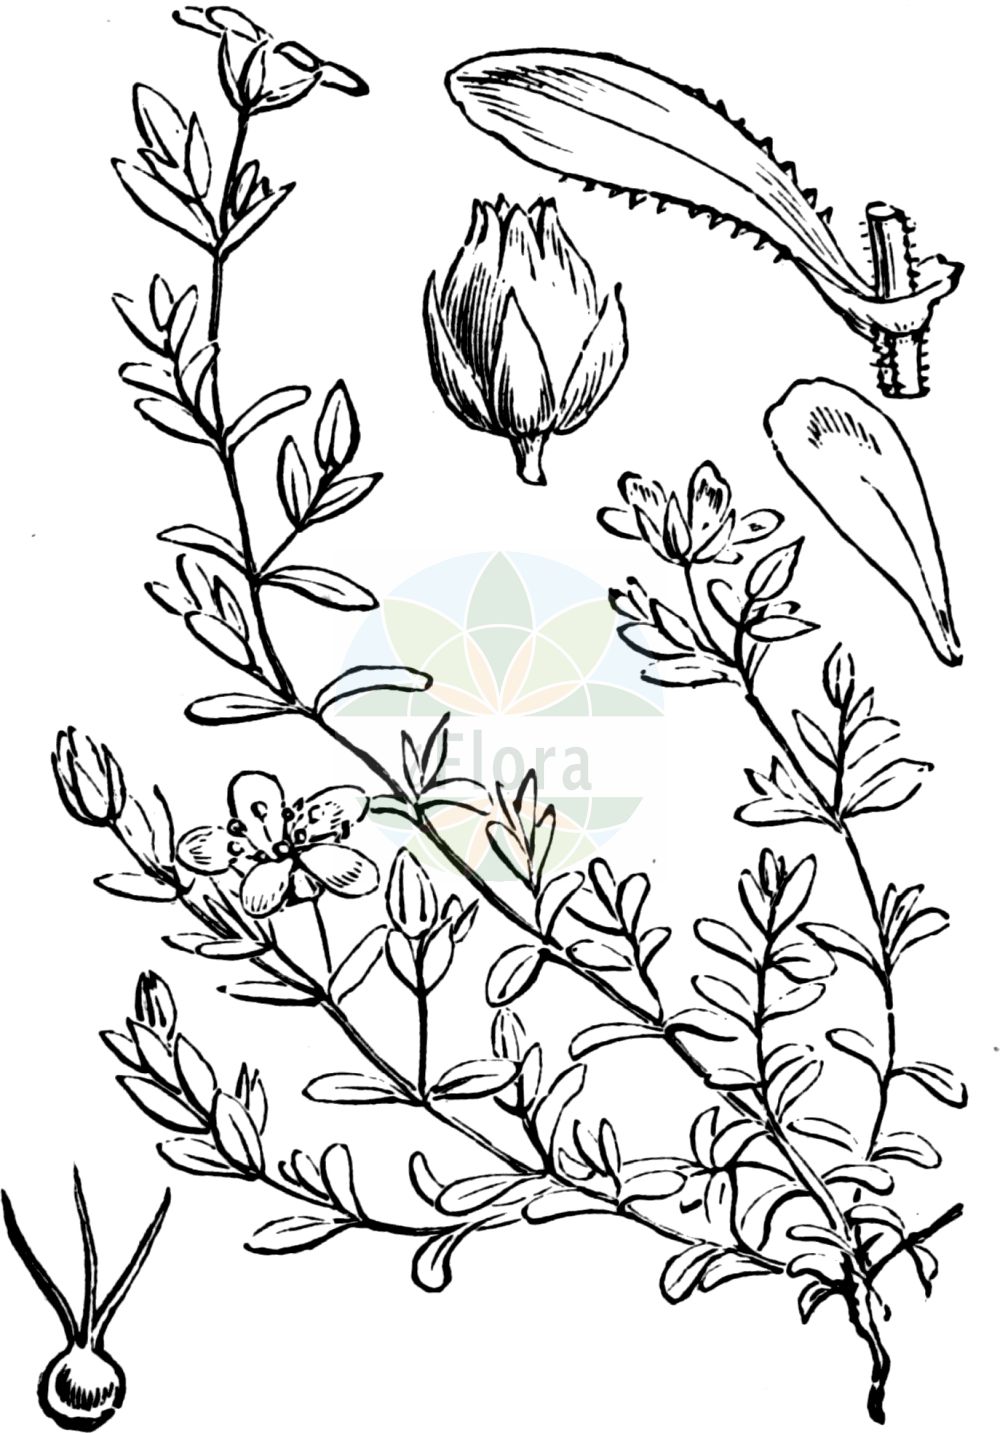 Historische Abbildung von Arenaria ciliata (Wimper-Sandkraut - Fringed Sandwort). Das Bild zeigt Blatt, Bluete, Frucht und Same. ---- Historical Drawing of Arenaria ciliata (Wimper-Sandkraut - Fringed Sandwort). The image is showing leaf, flower, fruit and seed.(Arenaria ciliata,Wimper-Sandkraut,Fringed Sandwort,Arenaria ciliata,Arenaria multicaulis,Wimper-Sandkraut,Vielstengeliges Wimper-Sandkraut,Fringed Sandwort,Ciliate-leaved Sandwort,Tundra Sandwort,Hairy Sandwort,Arenaria,Sandkraut,Sandwort,Caryophyllaceae,Nelkengewächse,Pink family,Blatt,Bluete,Frucht,Same,leaf,flower,fruit,seed,Fitch et al. (1880))